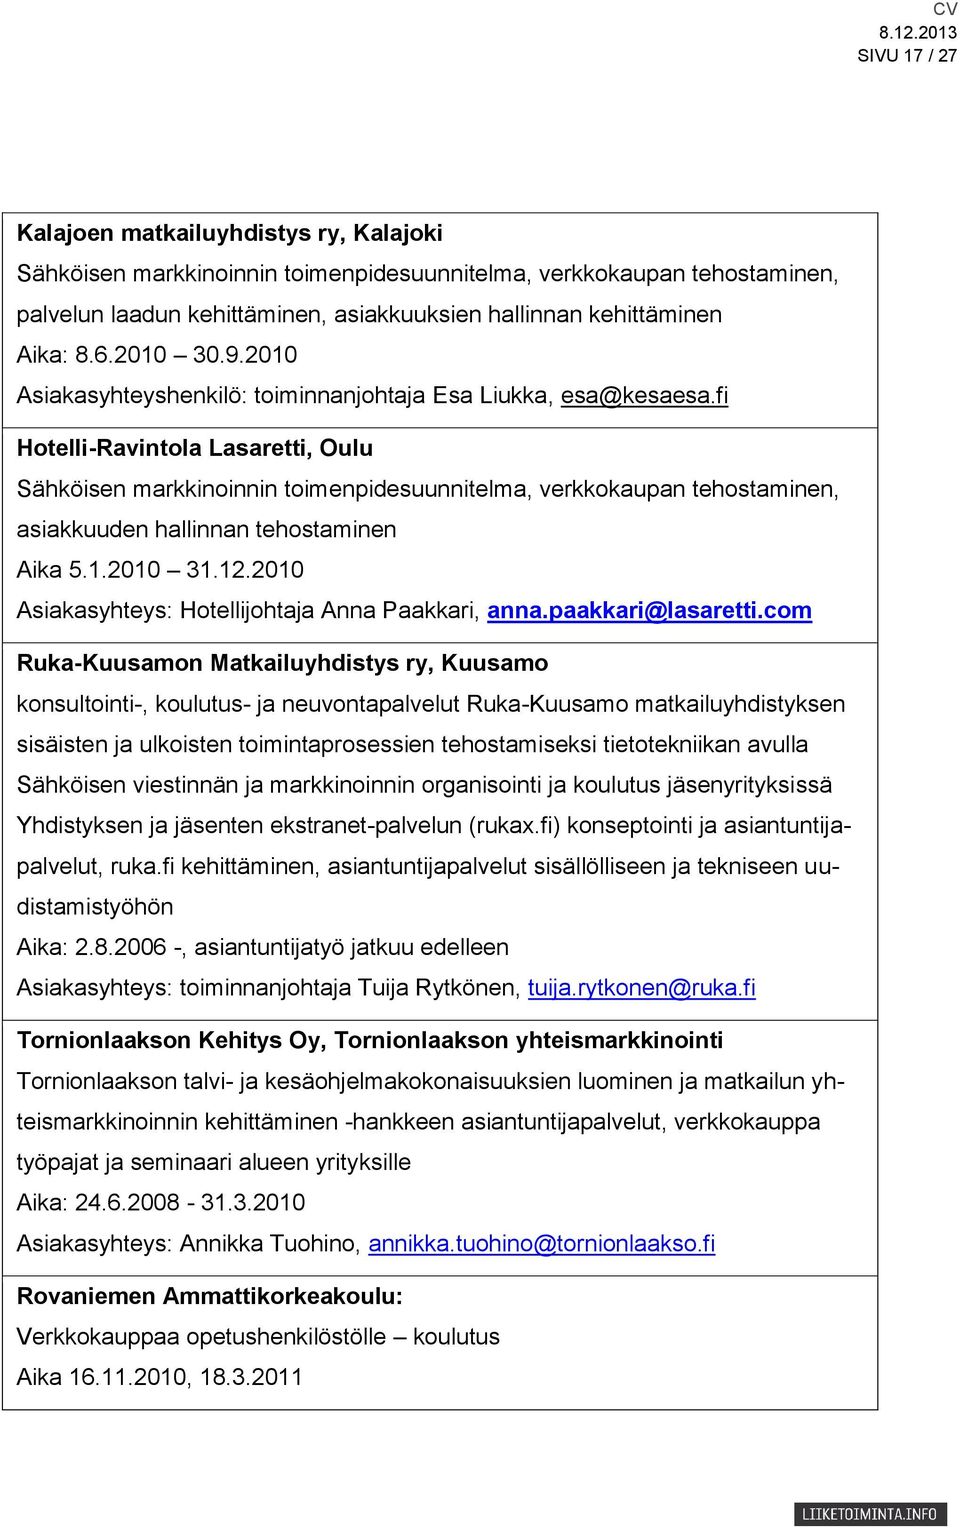 fi Hotelli-Ravintola Lasaretti, Oulu Sähköisen markkinoinnin toimenpidesuunnitelma, verkkokaupan tehostaminen, asiakkuuden hallinnan tehostaminen Aika 5.1.2010 31.12.